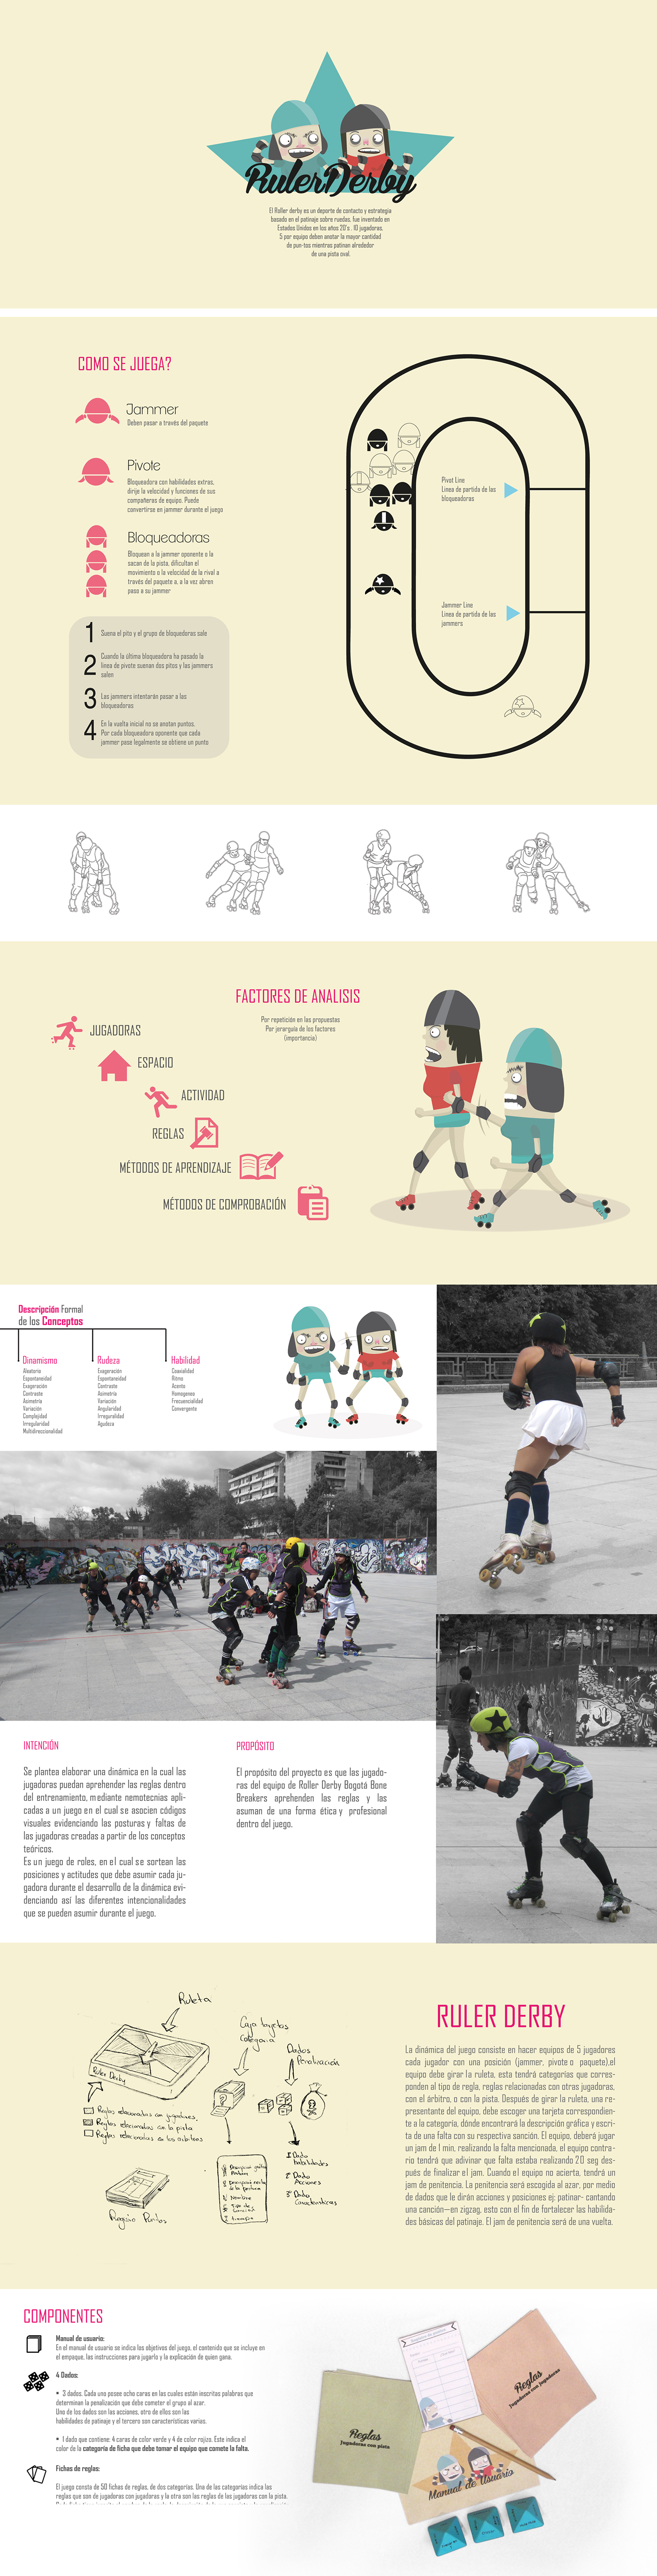 Roller Derby BoneBreakers skates girls sport context design Games Rules gaming WFTDA bogota